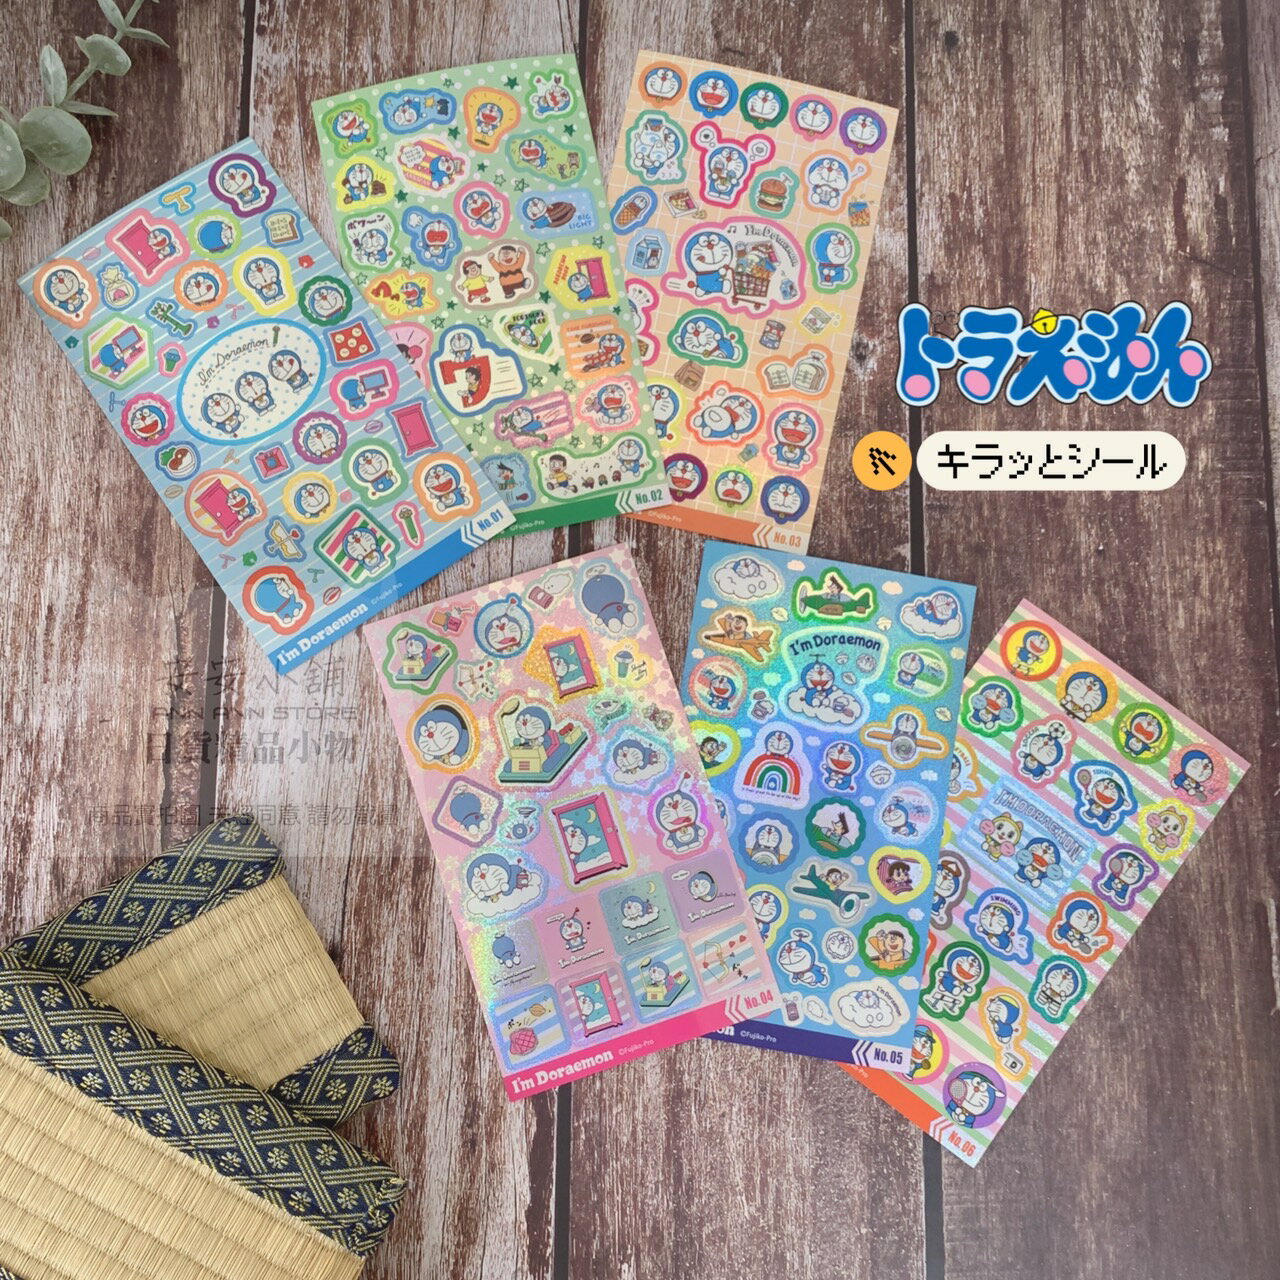 日本境內限定商品 D199 哆啦A夢 貼紙 ドラえもん 手帳貼紙 雷射貼紙獎勵貼紙 包裝美化 Doraemon 全6種